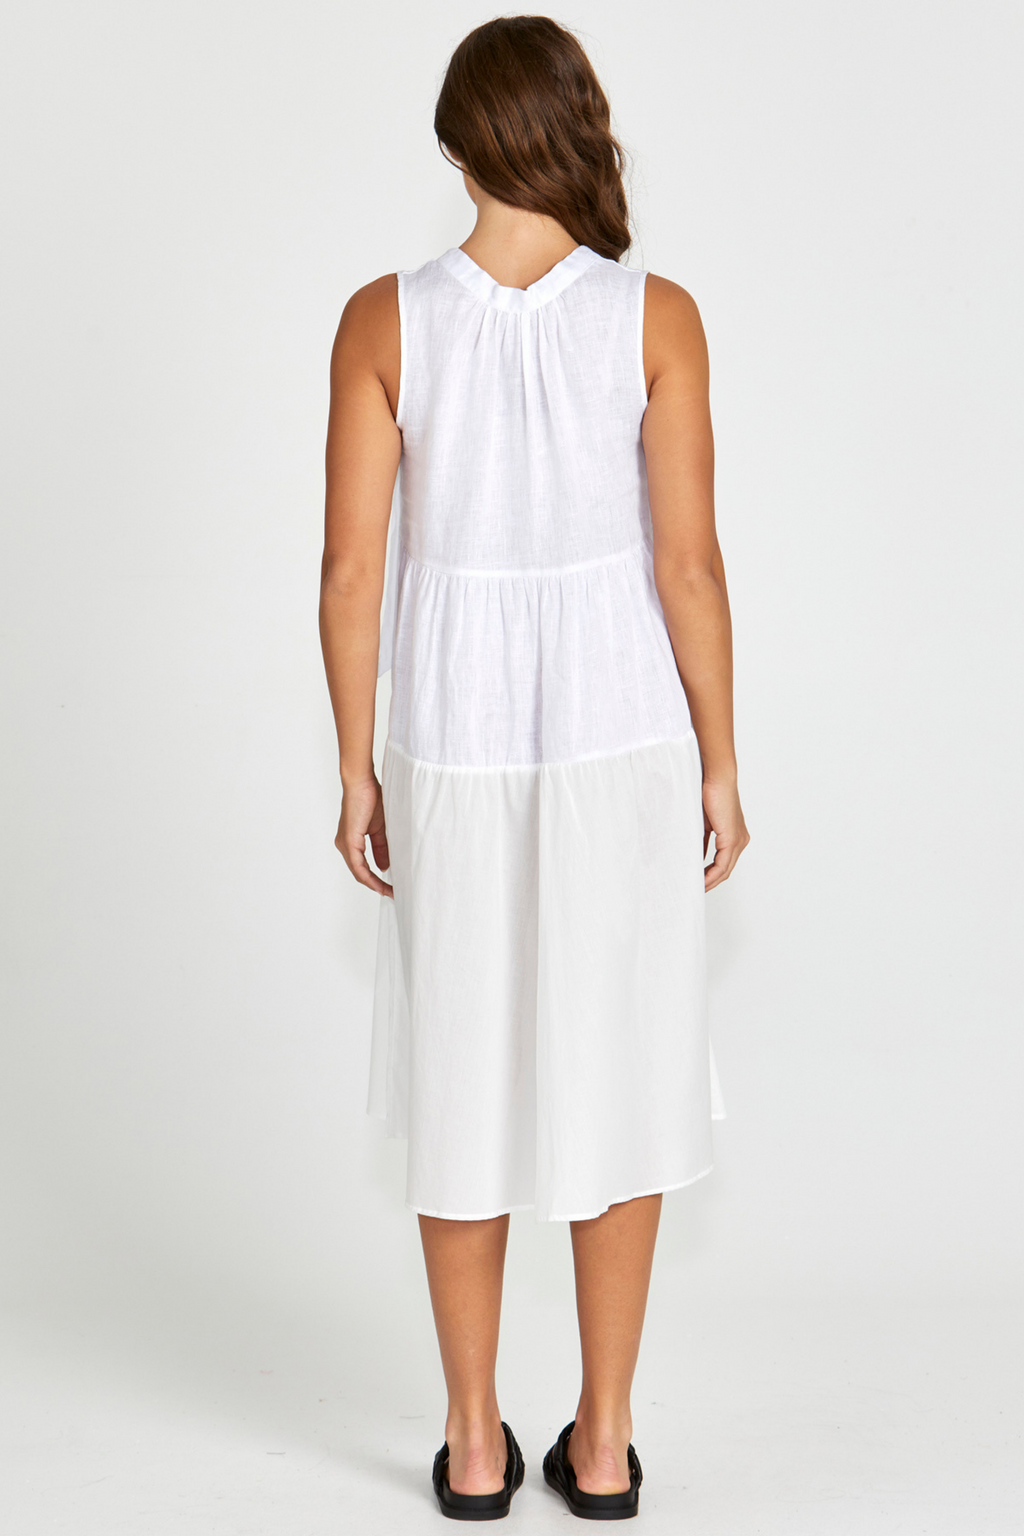 SAVANNAH DRESS - White